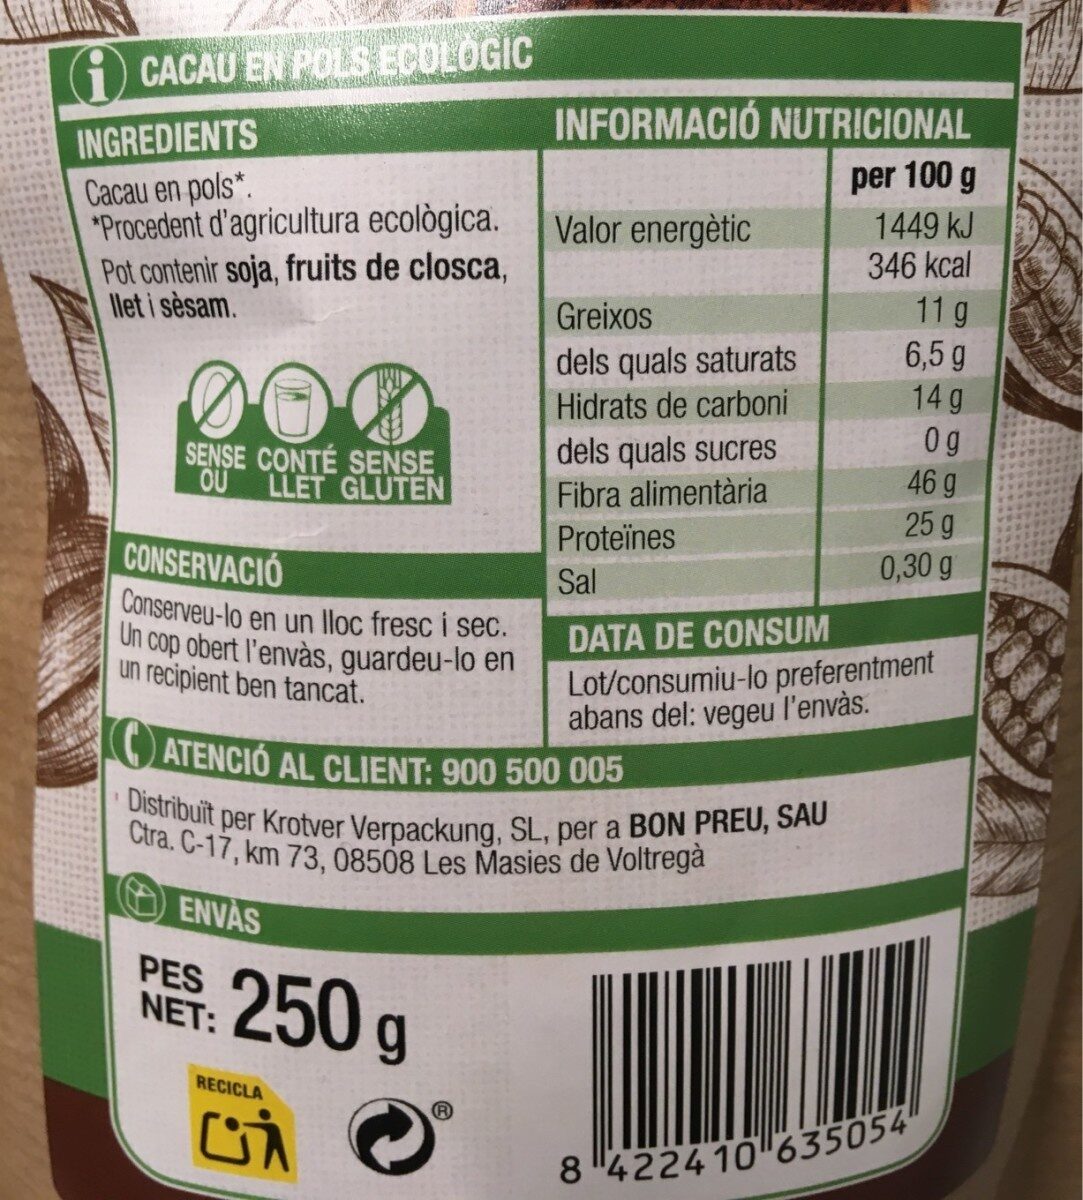 Cacao puro en polvo - Informació nutricional - es